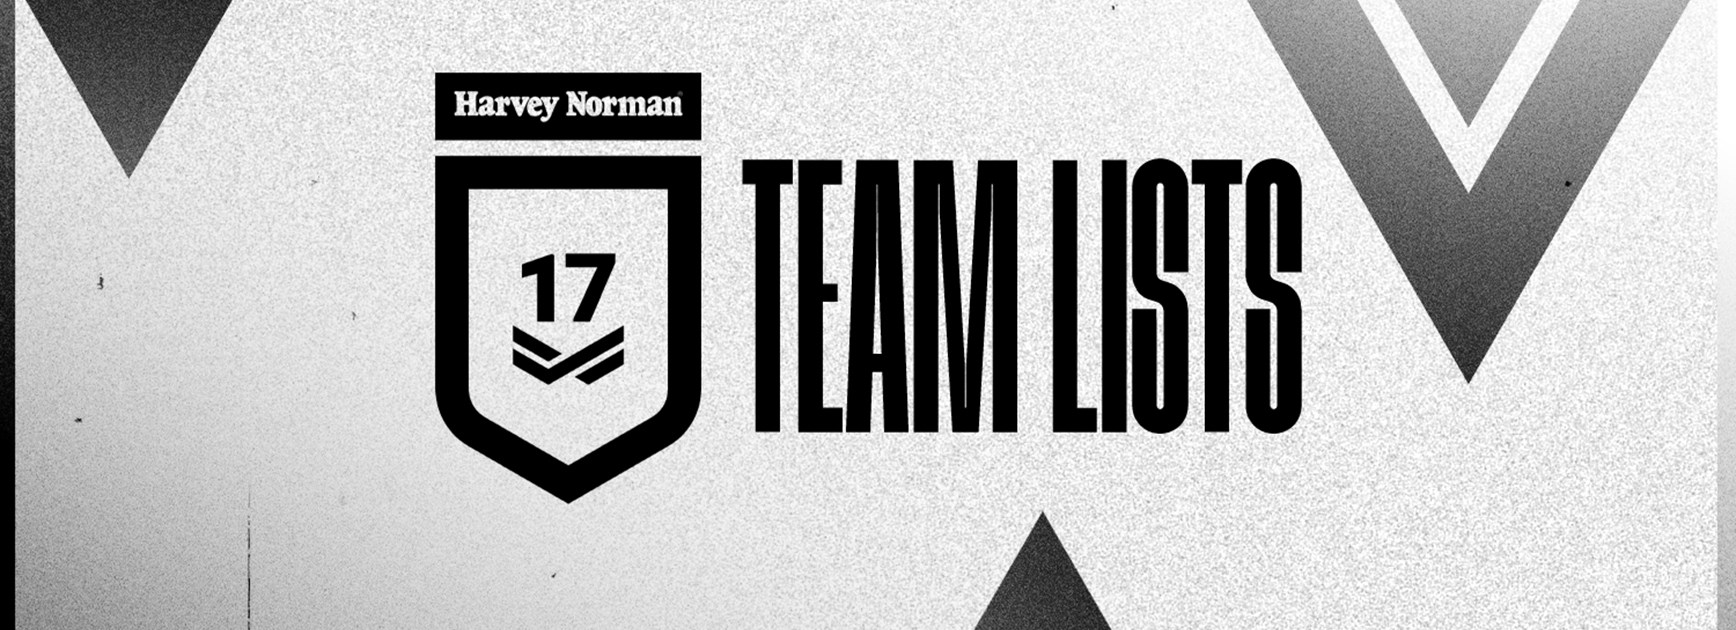 Round 3 Harvey Norman Under 17 team lists